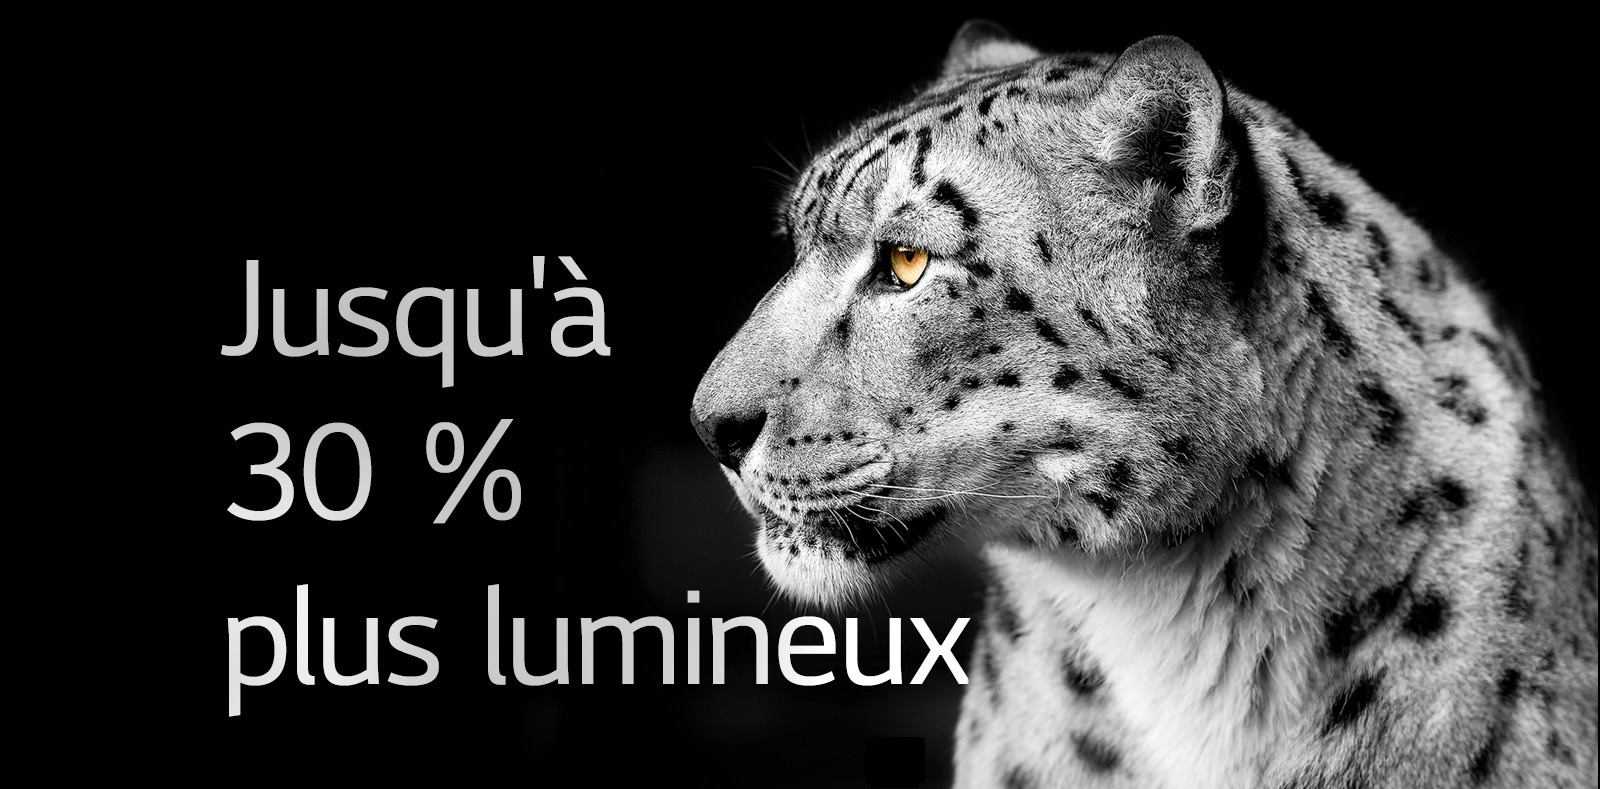 Un léopard blanc montrant sa face latérale sur le côté gauche de l'image. La mention "Up to 30% brighter" apparaît à gauche.